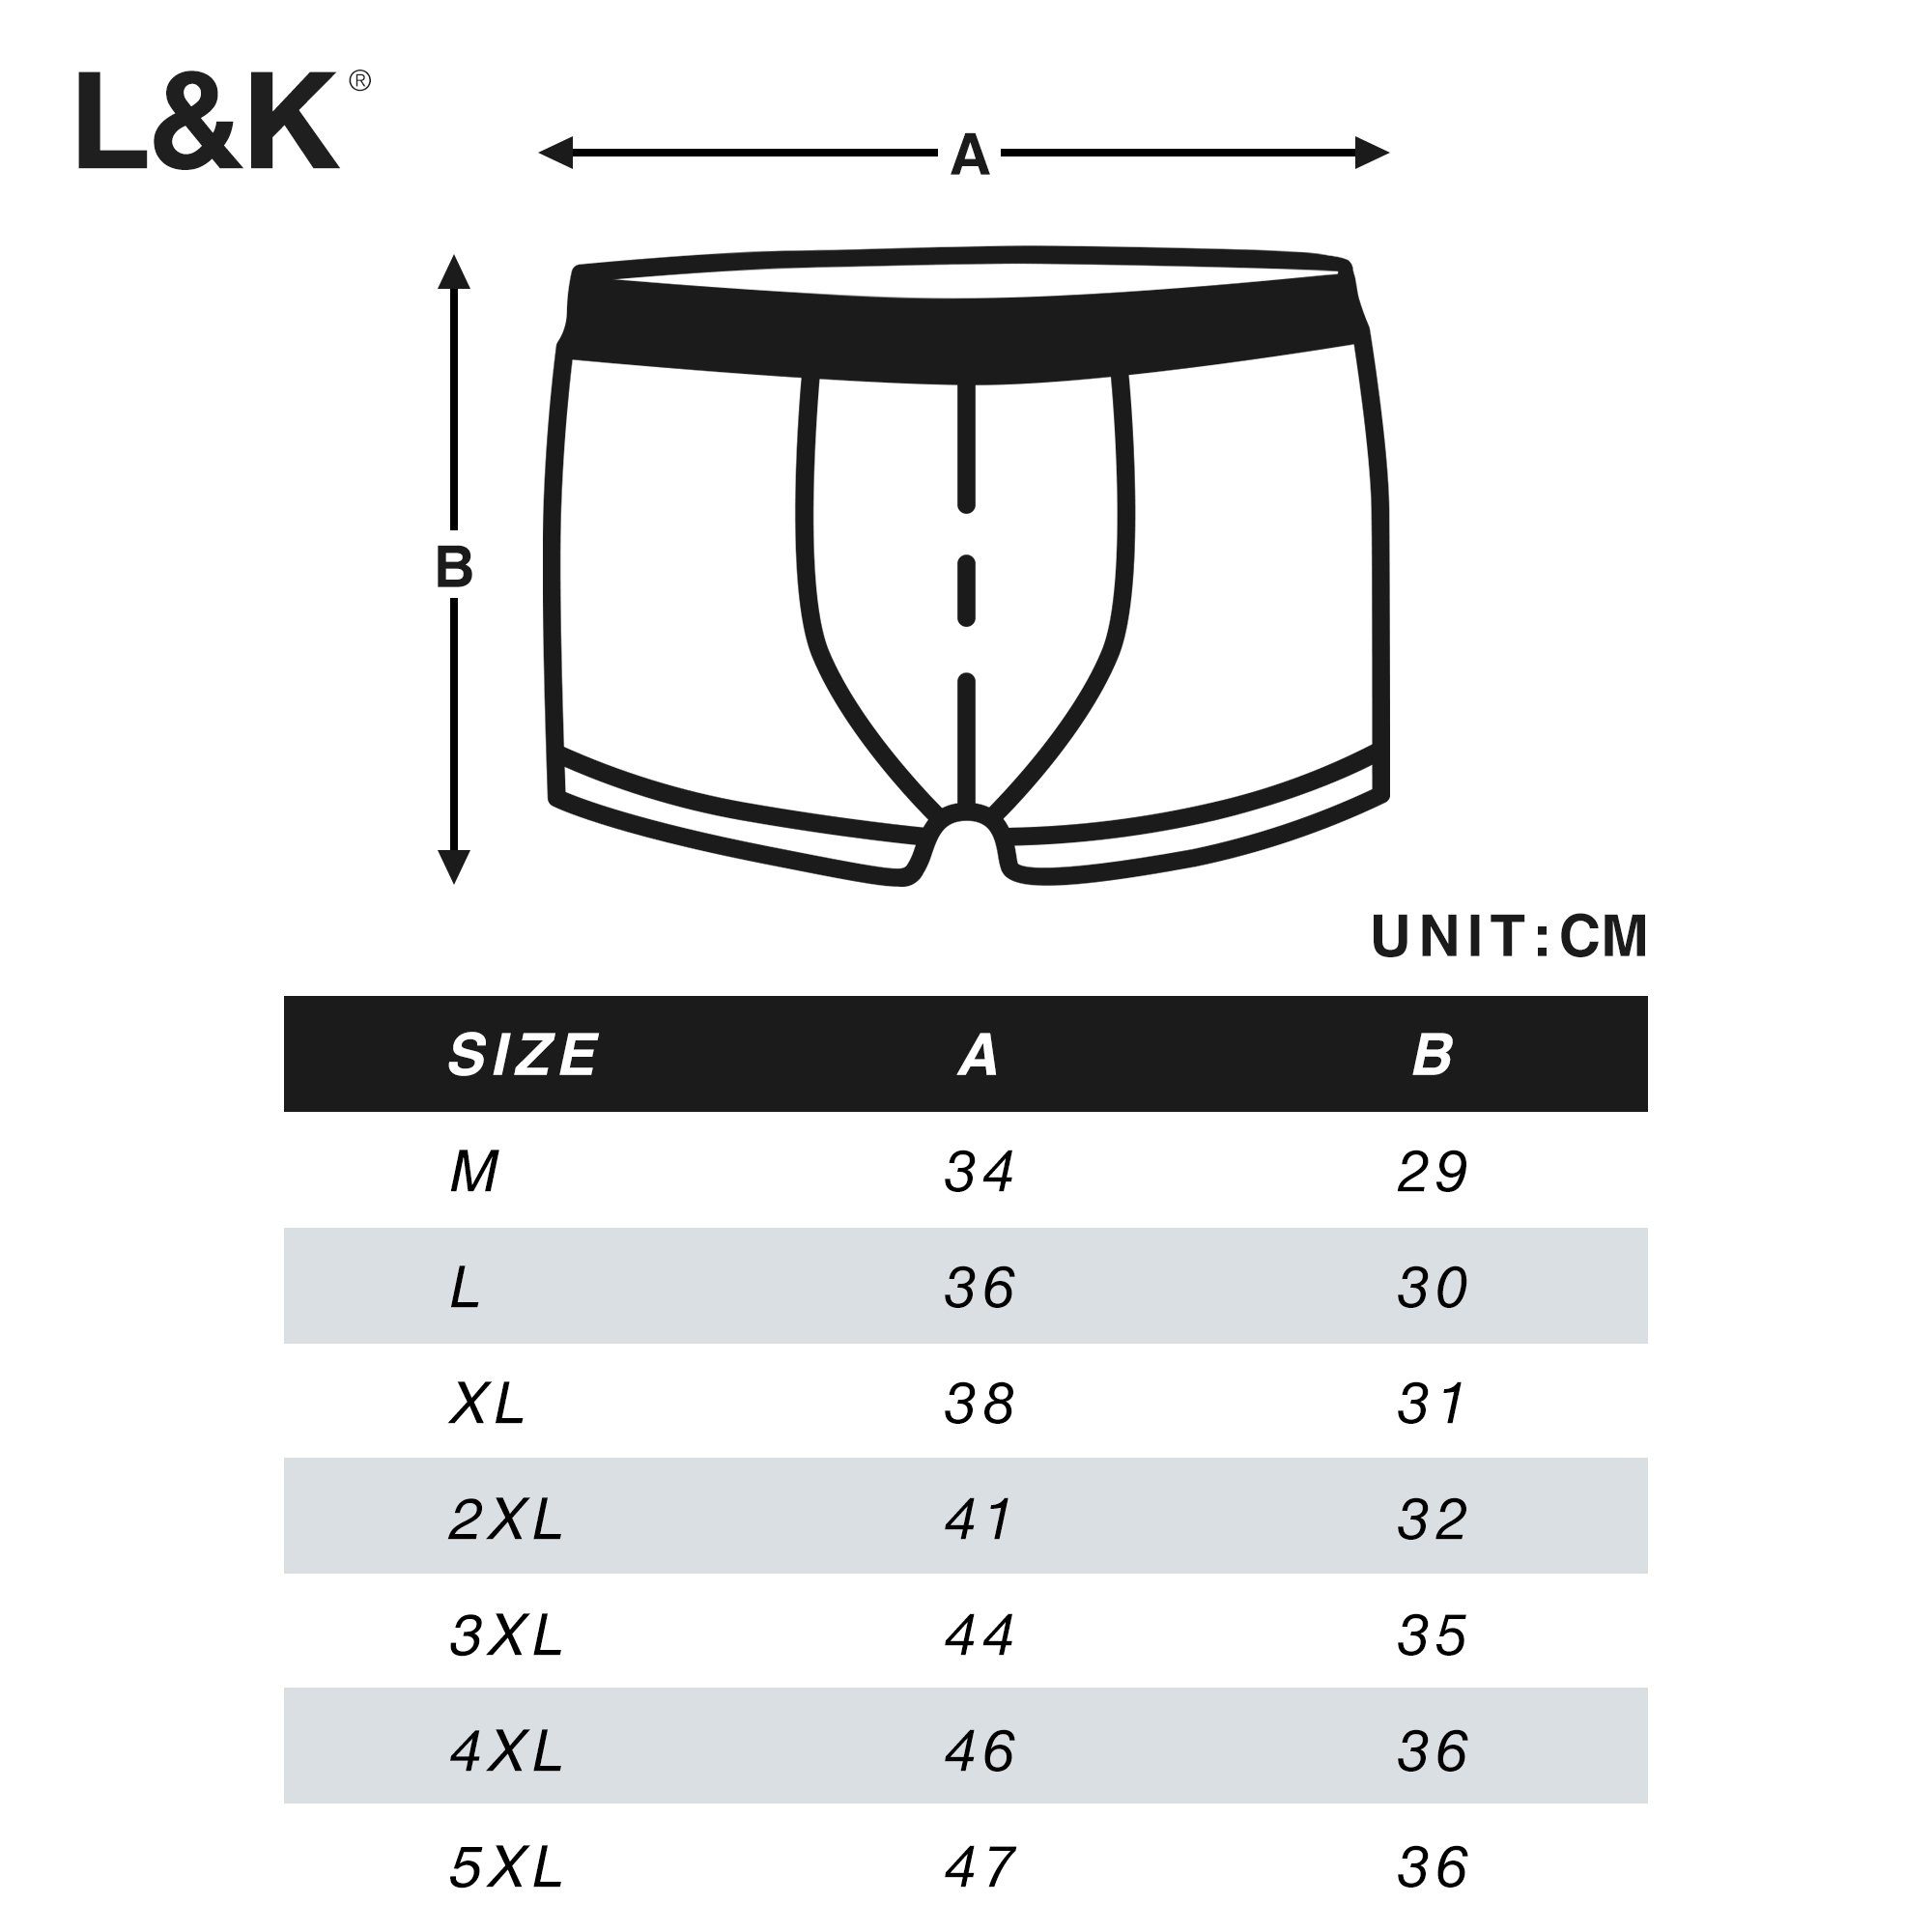 L&K Boxershorts 1102-1120 (10er-Pack) Unterhosen Baumwolle aus Herren